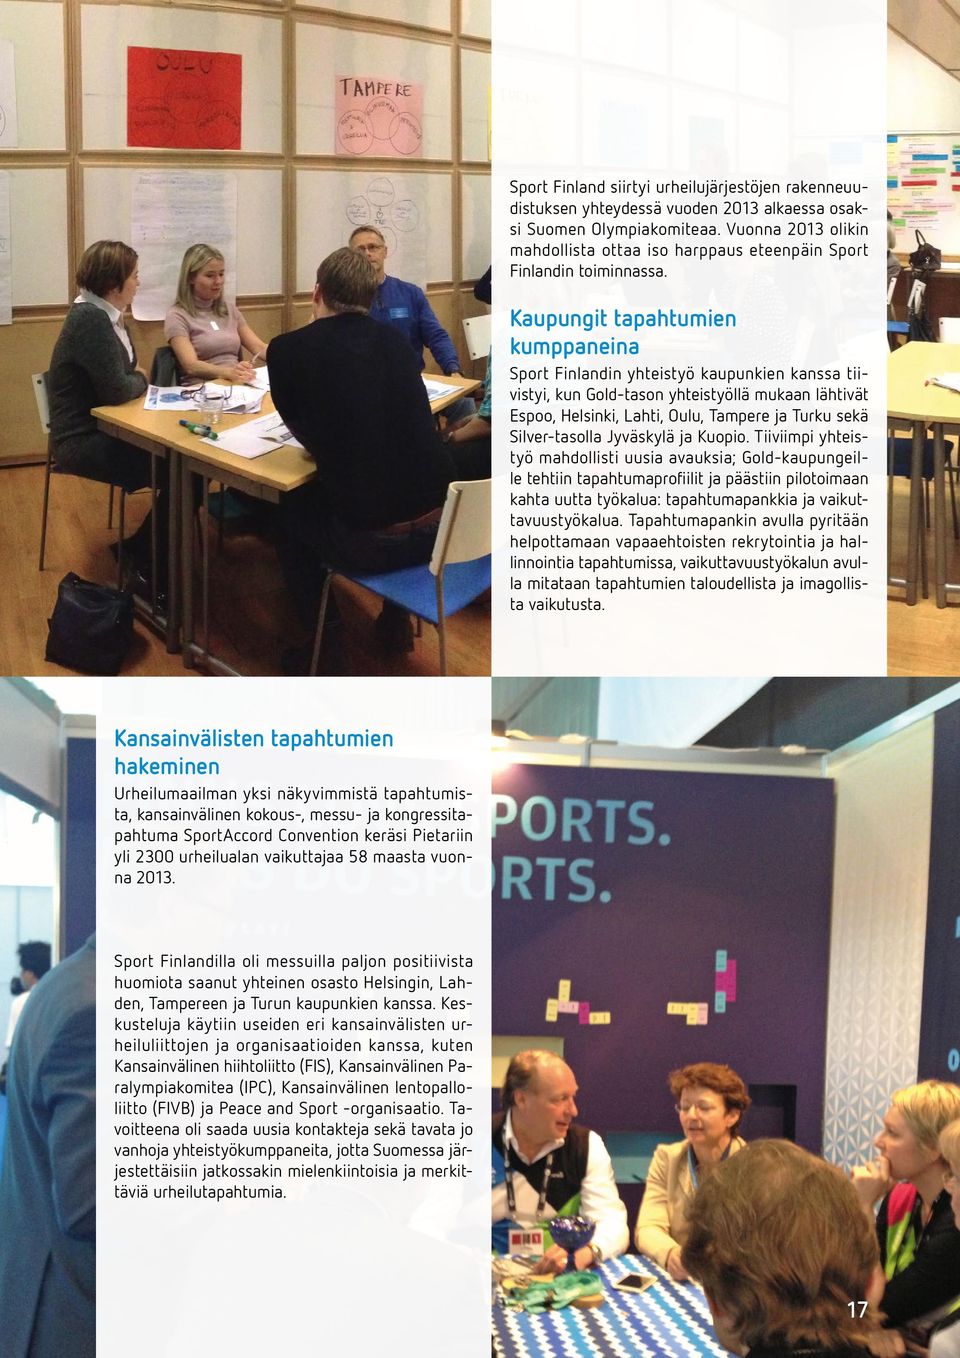 Kaupungit tapahtumien kumppaneina Sport Finlandin yhteistyö kaupunkien kanssa tiivistyi, kun Gold-tason yhteistyöllä mukaan lähtivät Espoo, Helsinki, Lahti, Oulu, Tampere ja Turku sekä Silver-tasolla